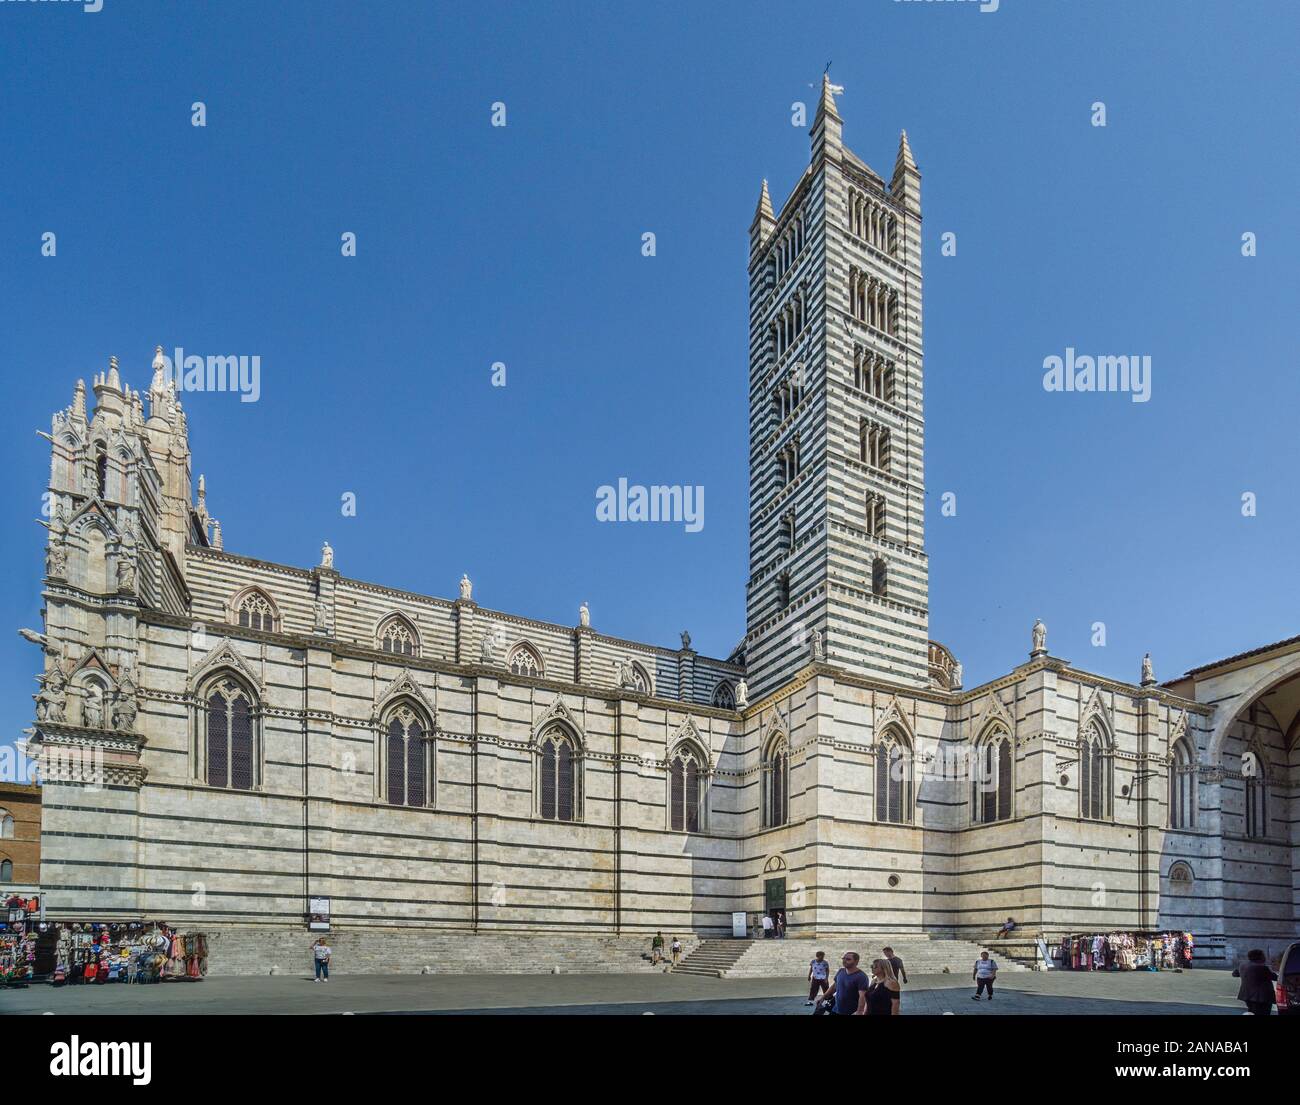 Facciata e campanile del Duomo di Siena con strisce alternate di colore bianco e verde-marmo nero, che simboleggiano i colori di Siena, Toscana, Italia Foto Stock